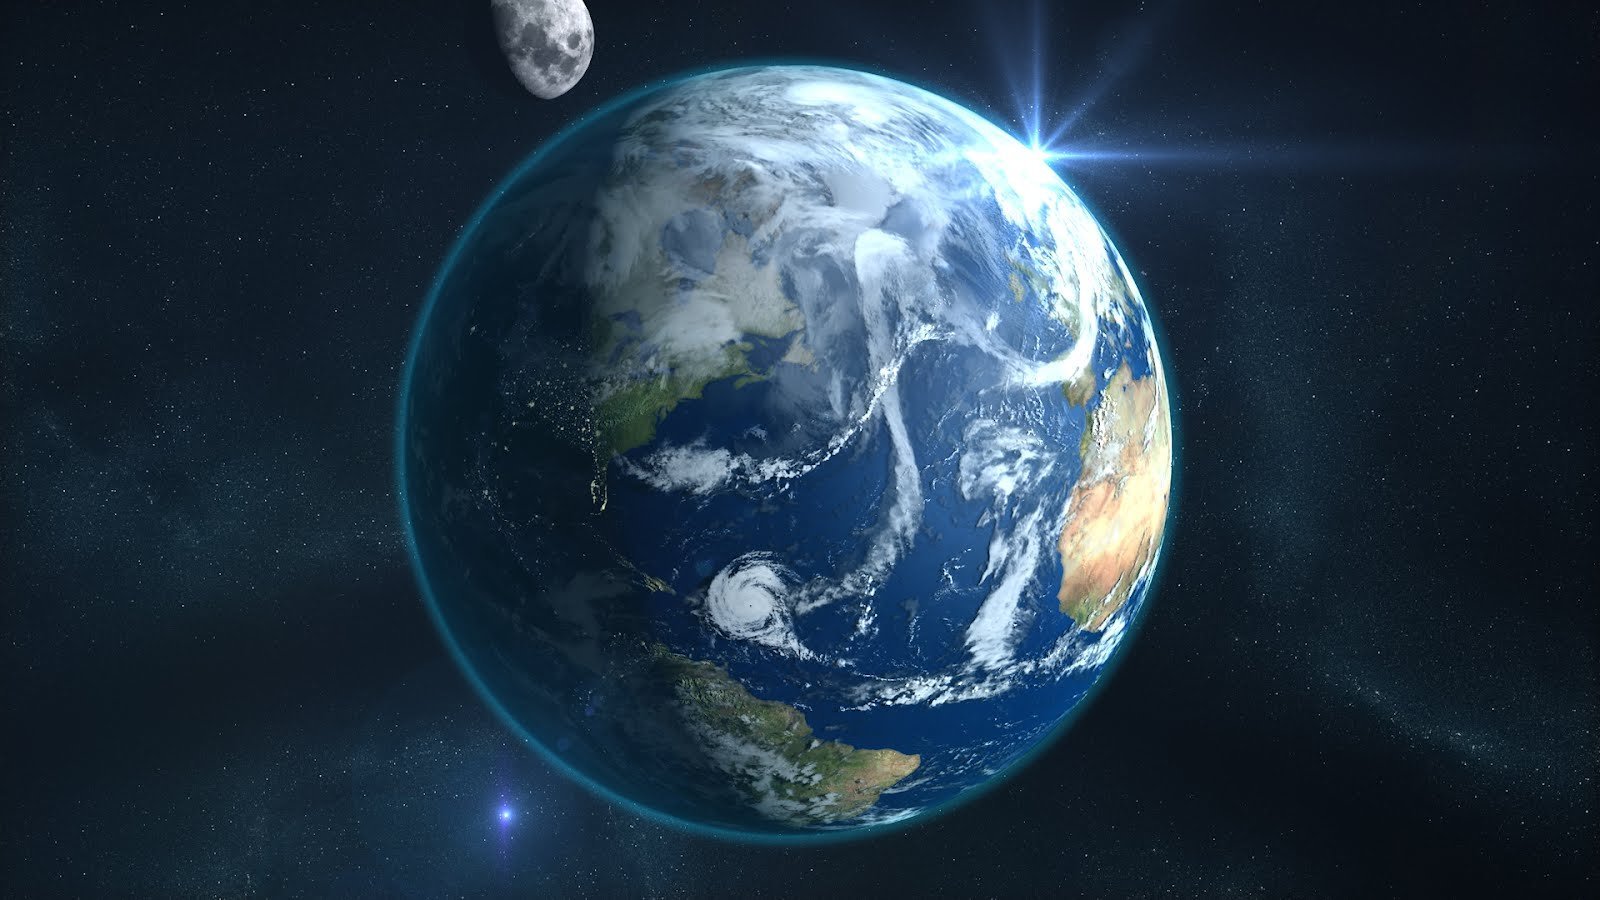 Картинка планета земля из космоса. Планета земля. О земле и космосе. Планета из космоса. Земной шар.